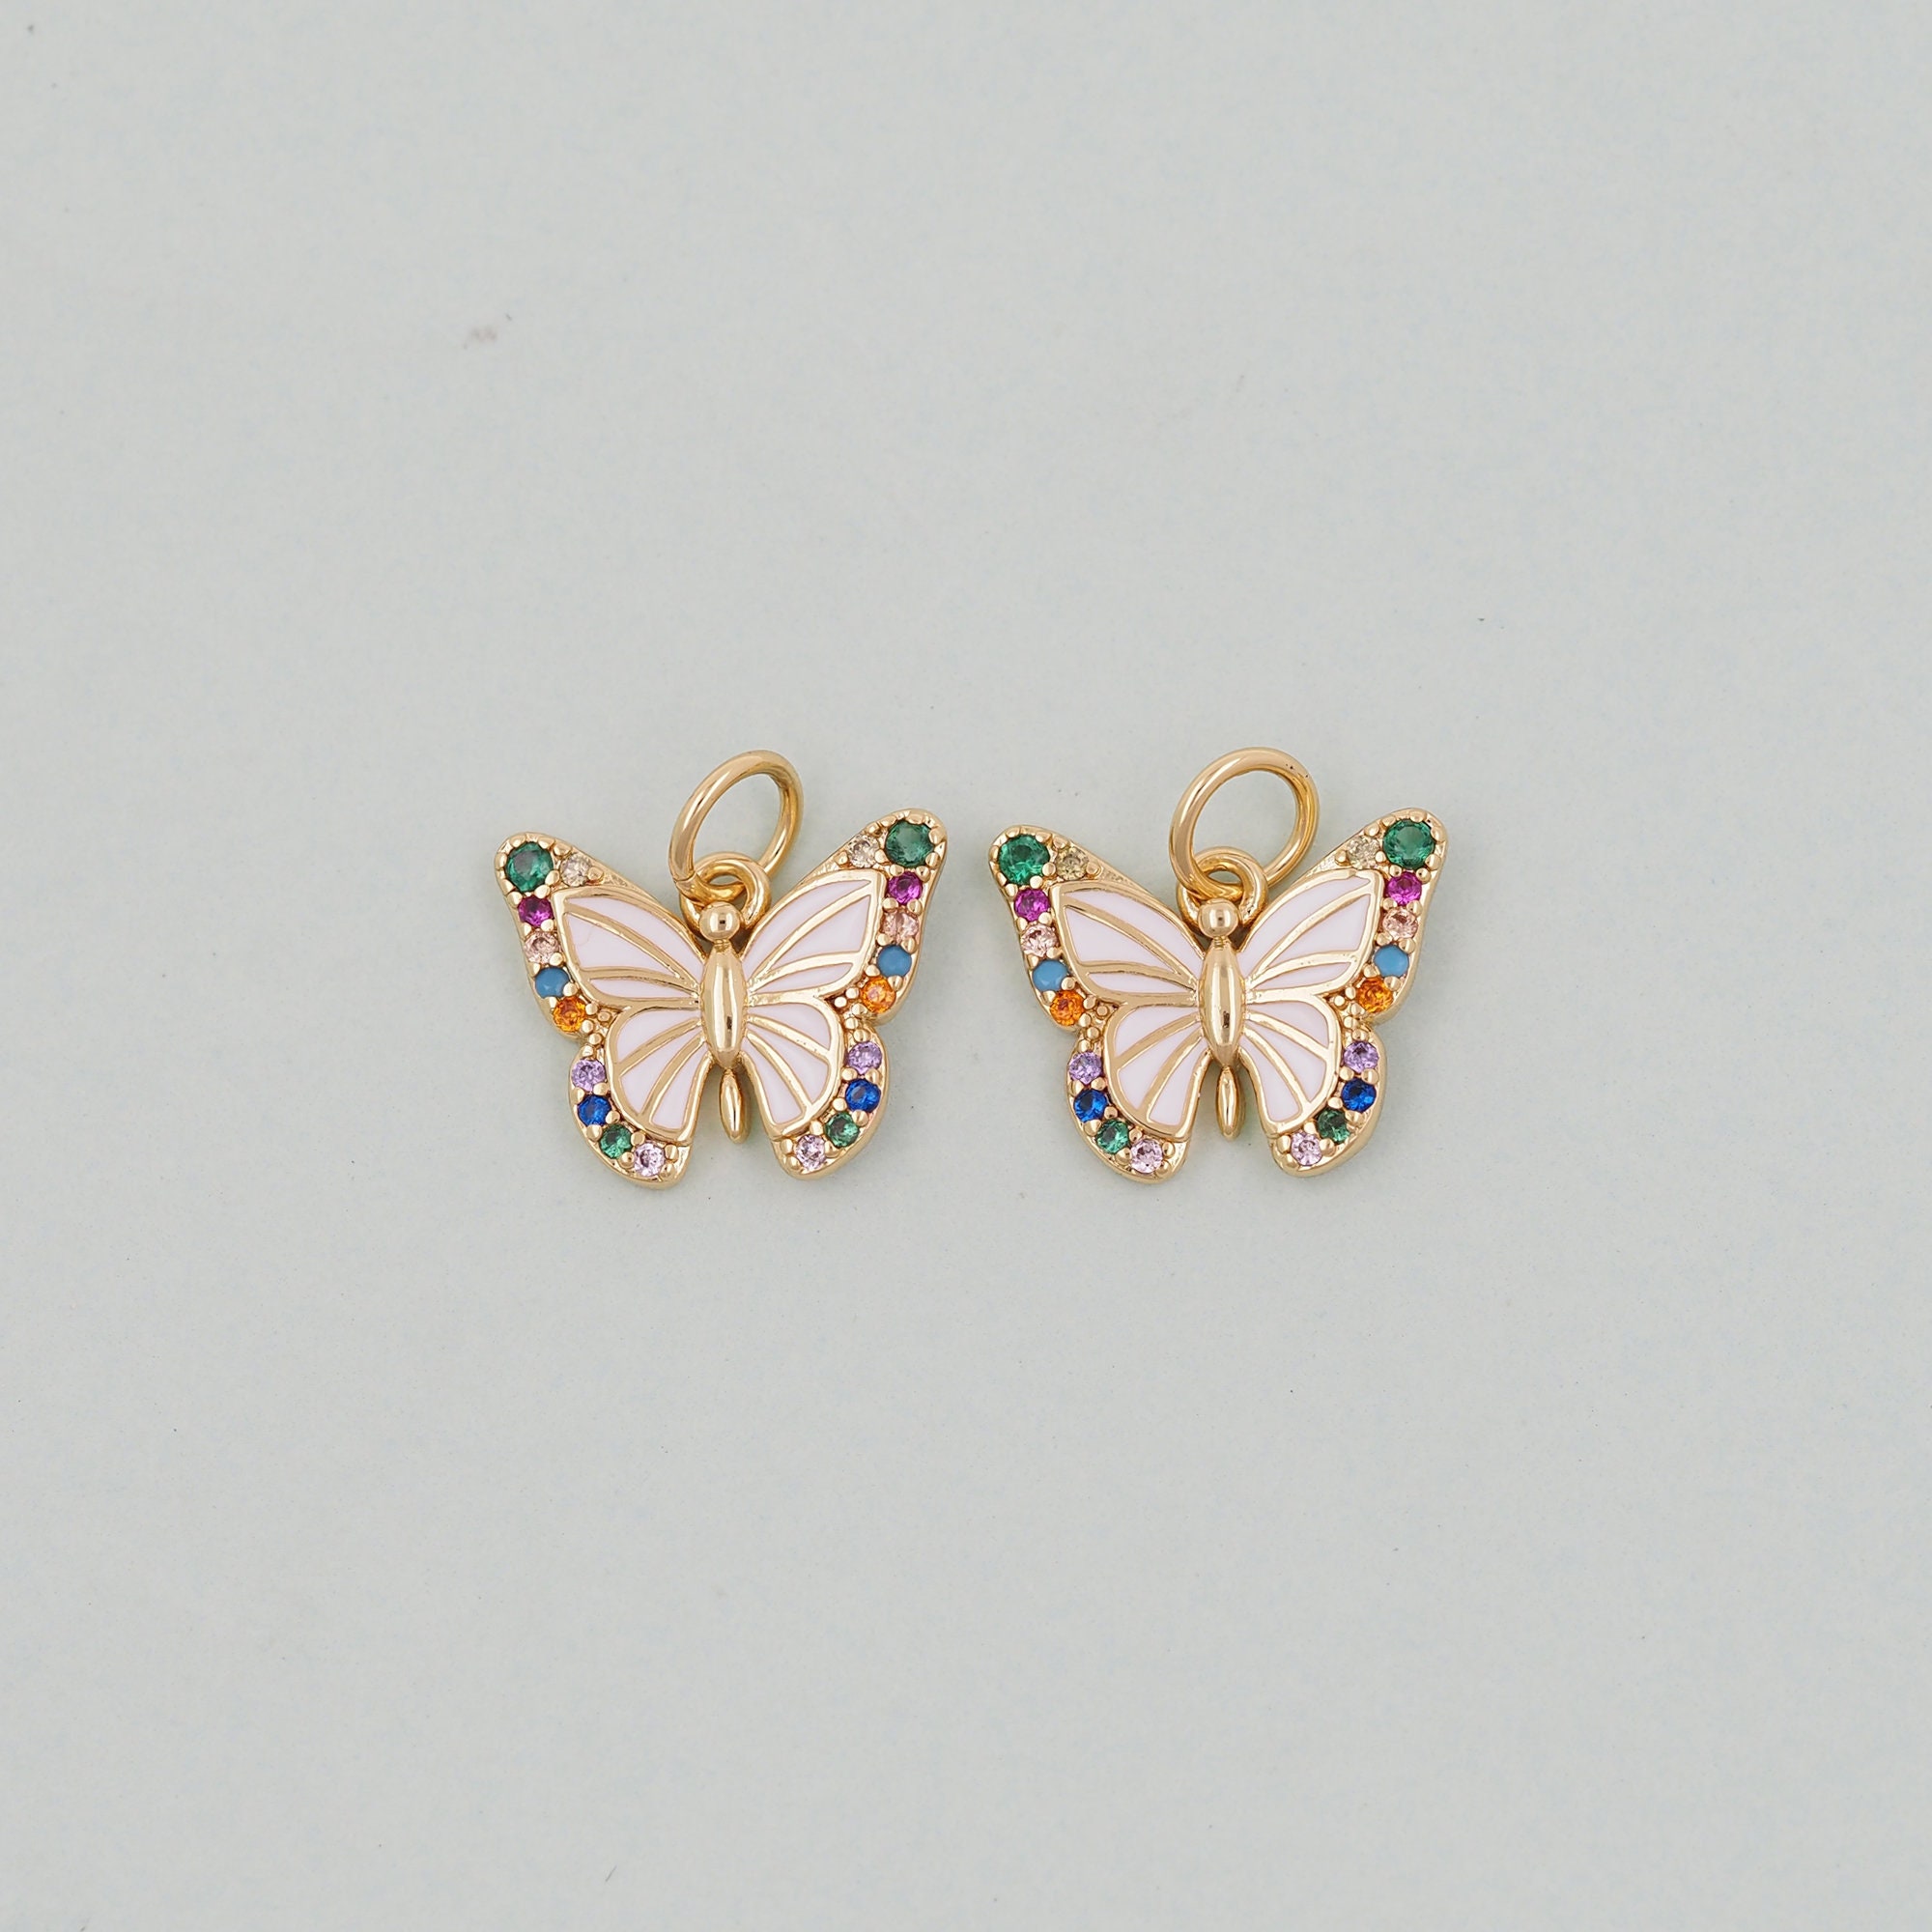 Butterfly Charm Bracelet – Pink Poppy